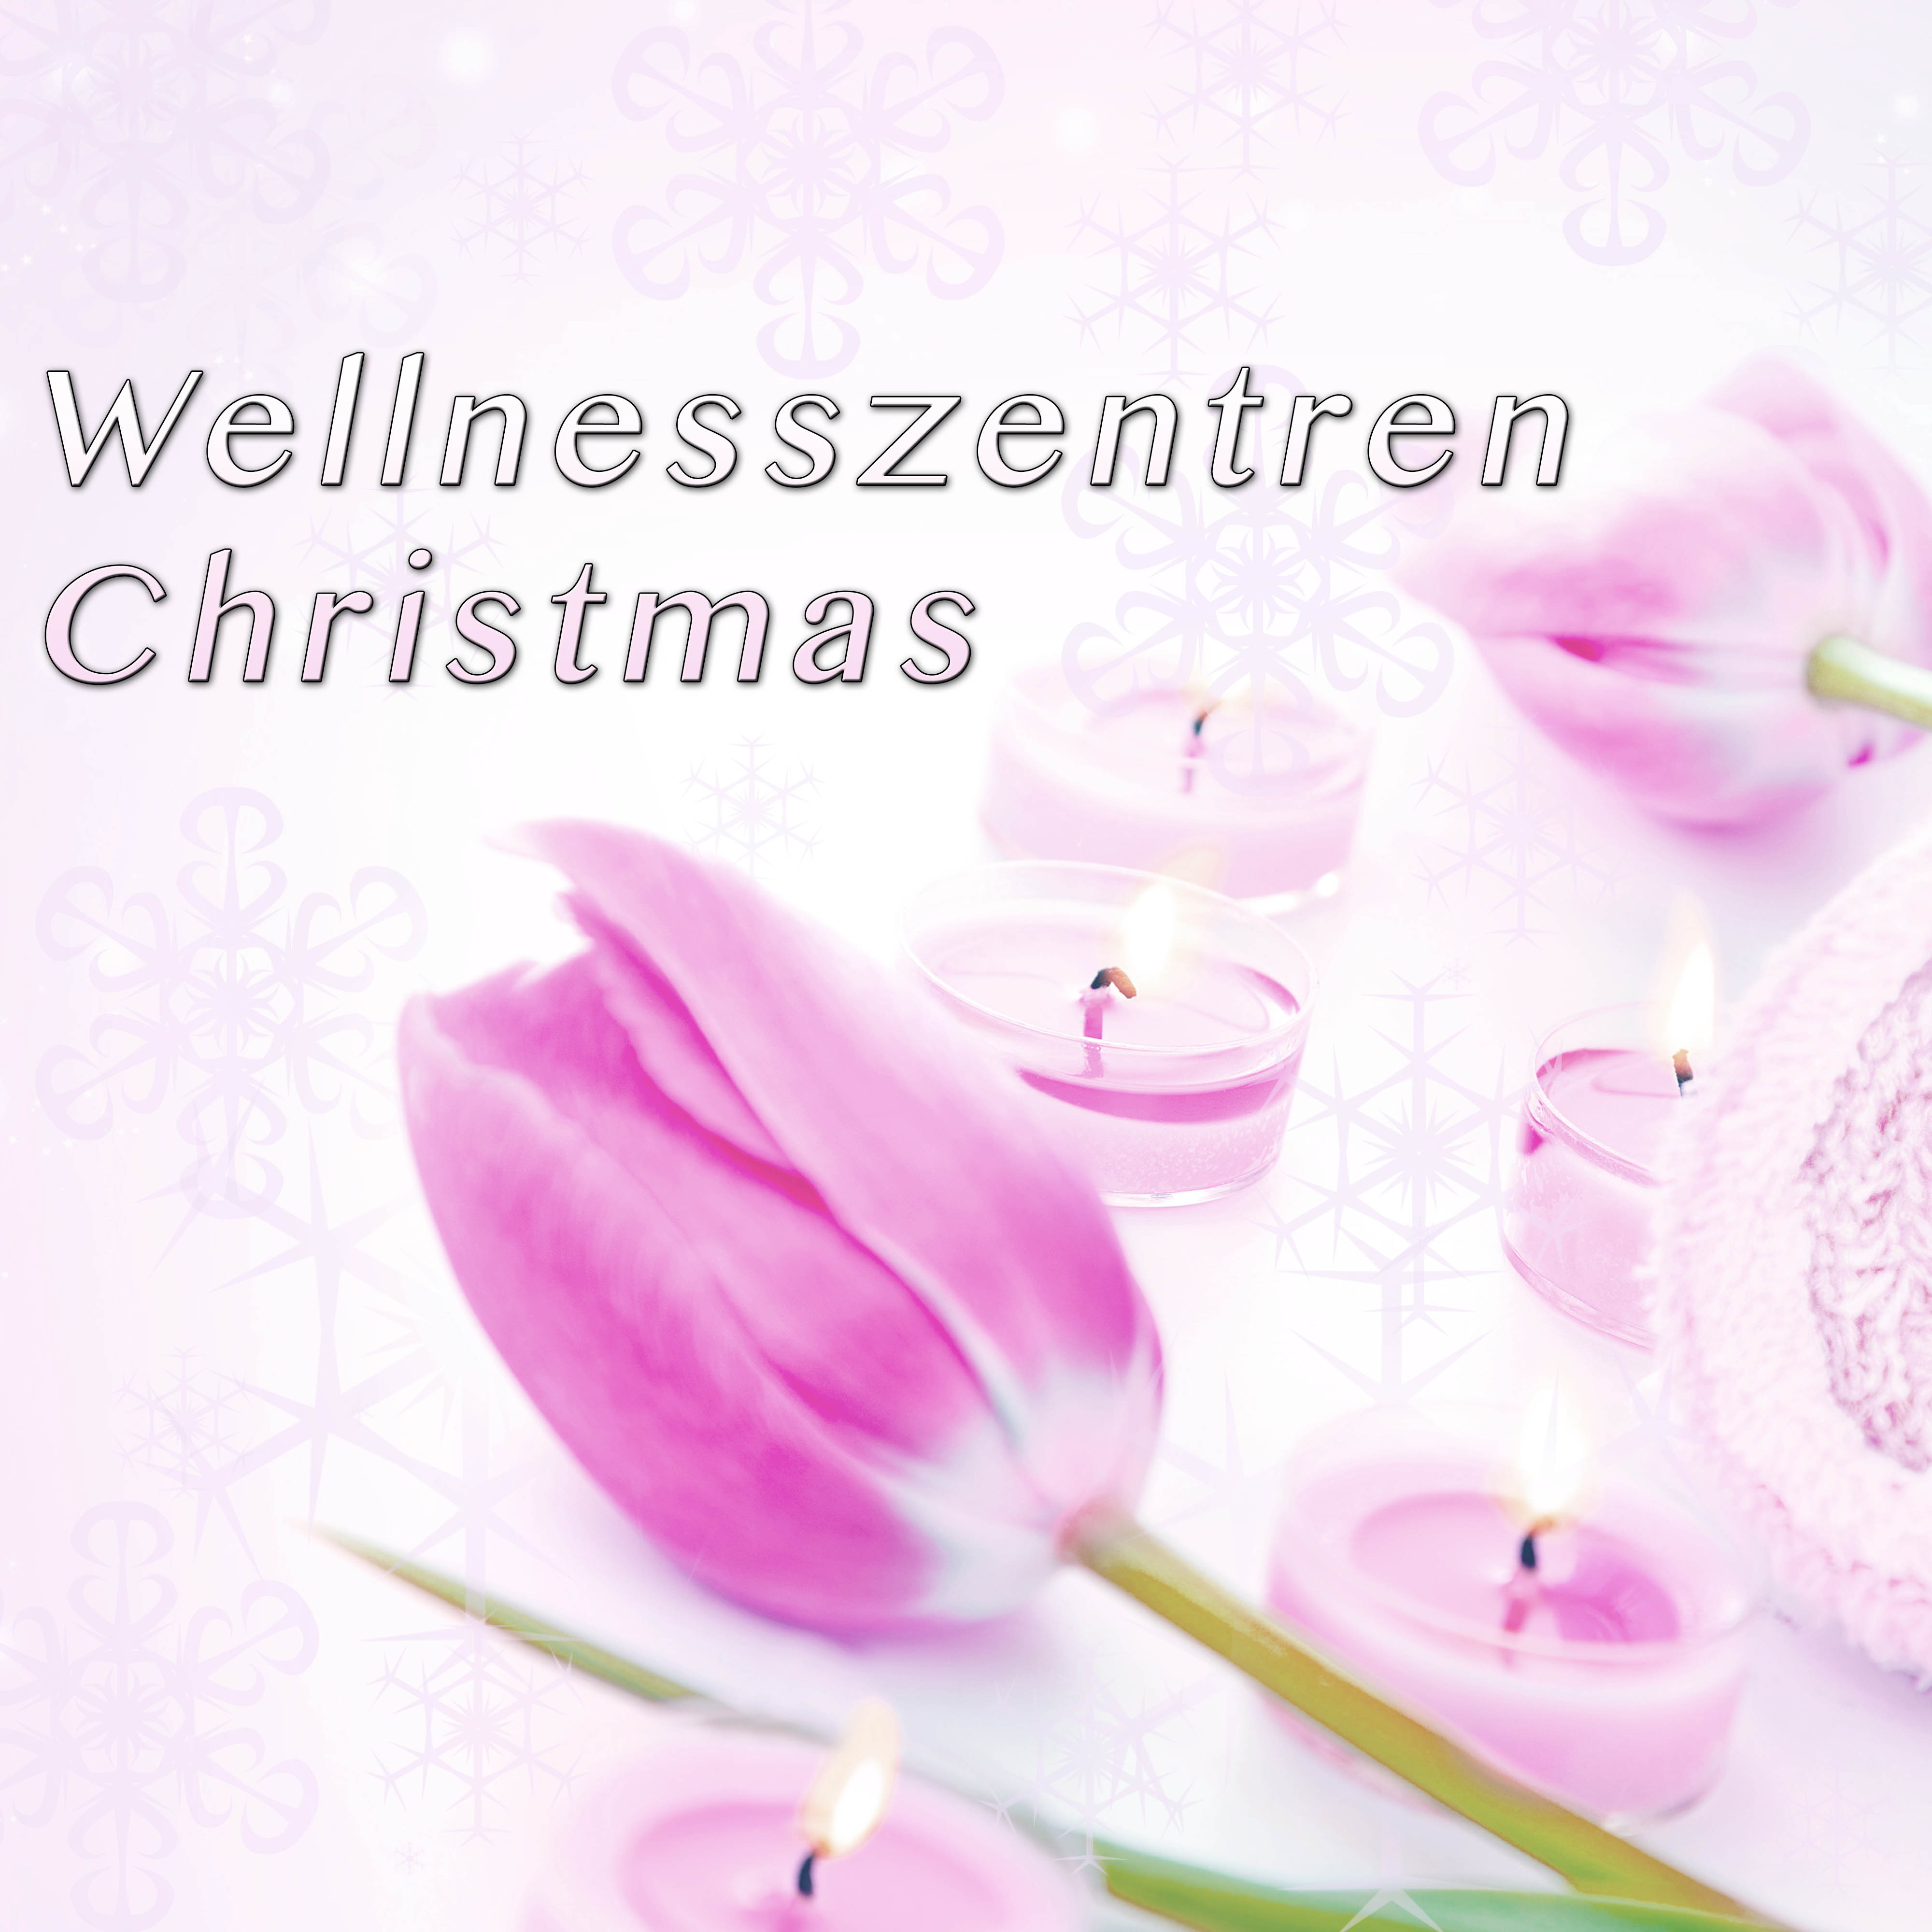 Wellnesszentren Christmas: Kl nge der Heilung fü r Weihnachten